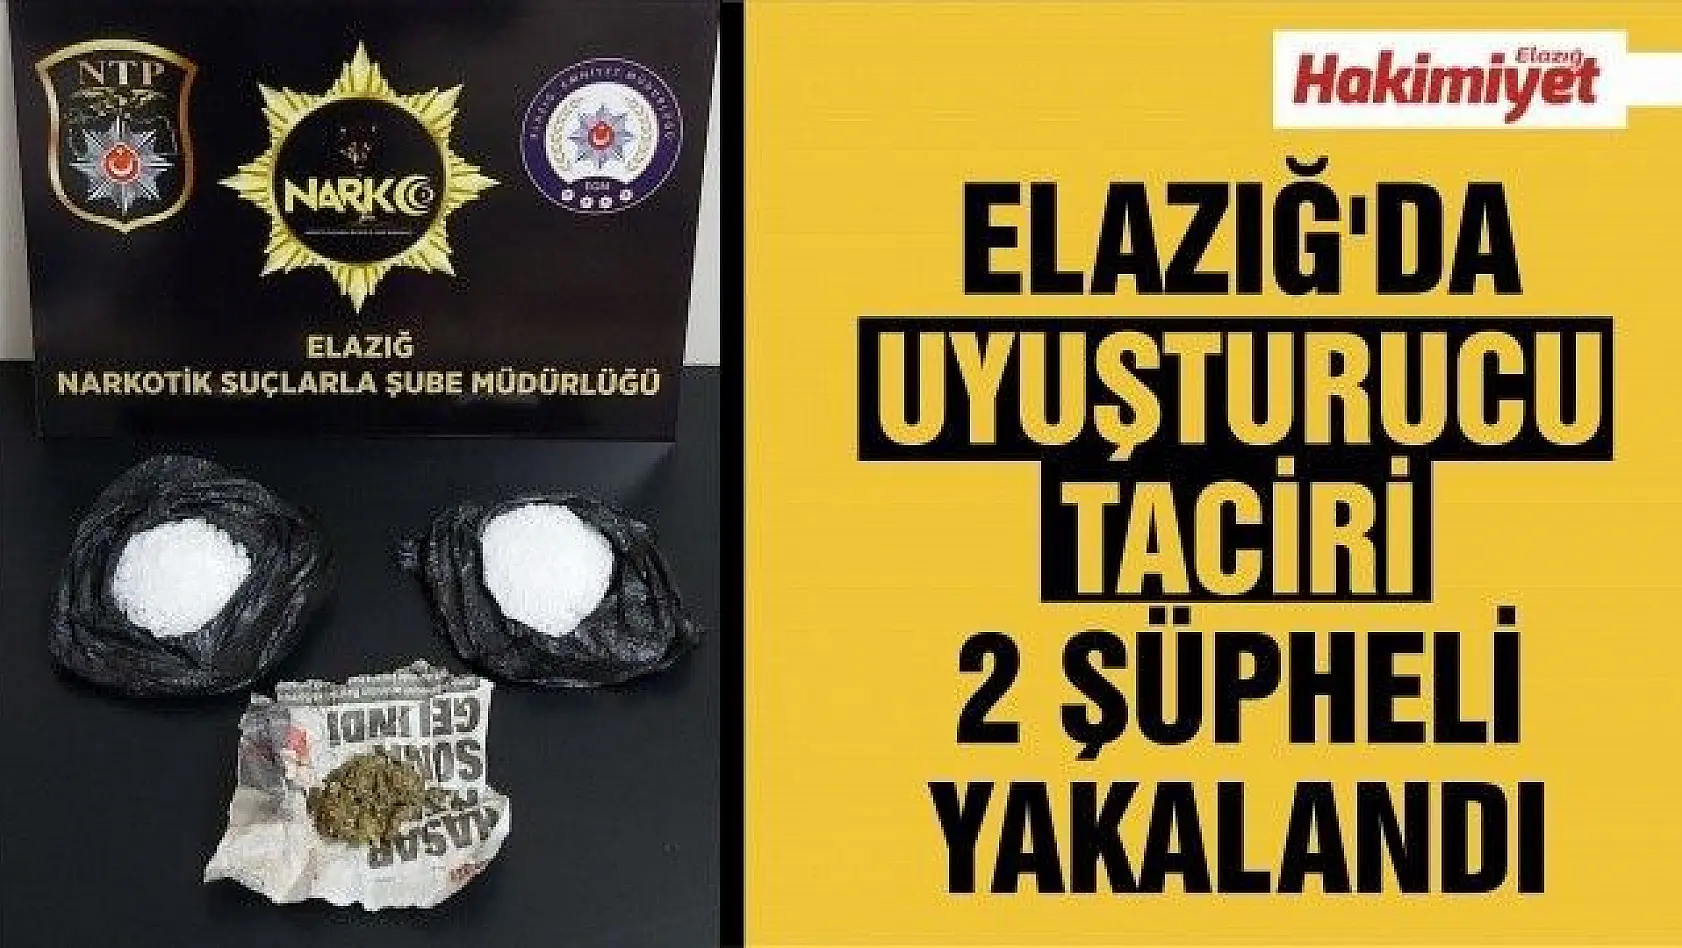  Elazığ'da uyuşturucu taciri 2 şüpheli yakalandı